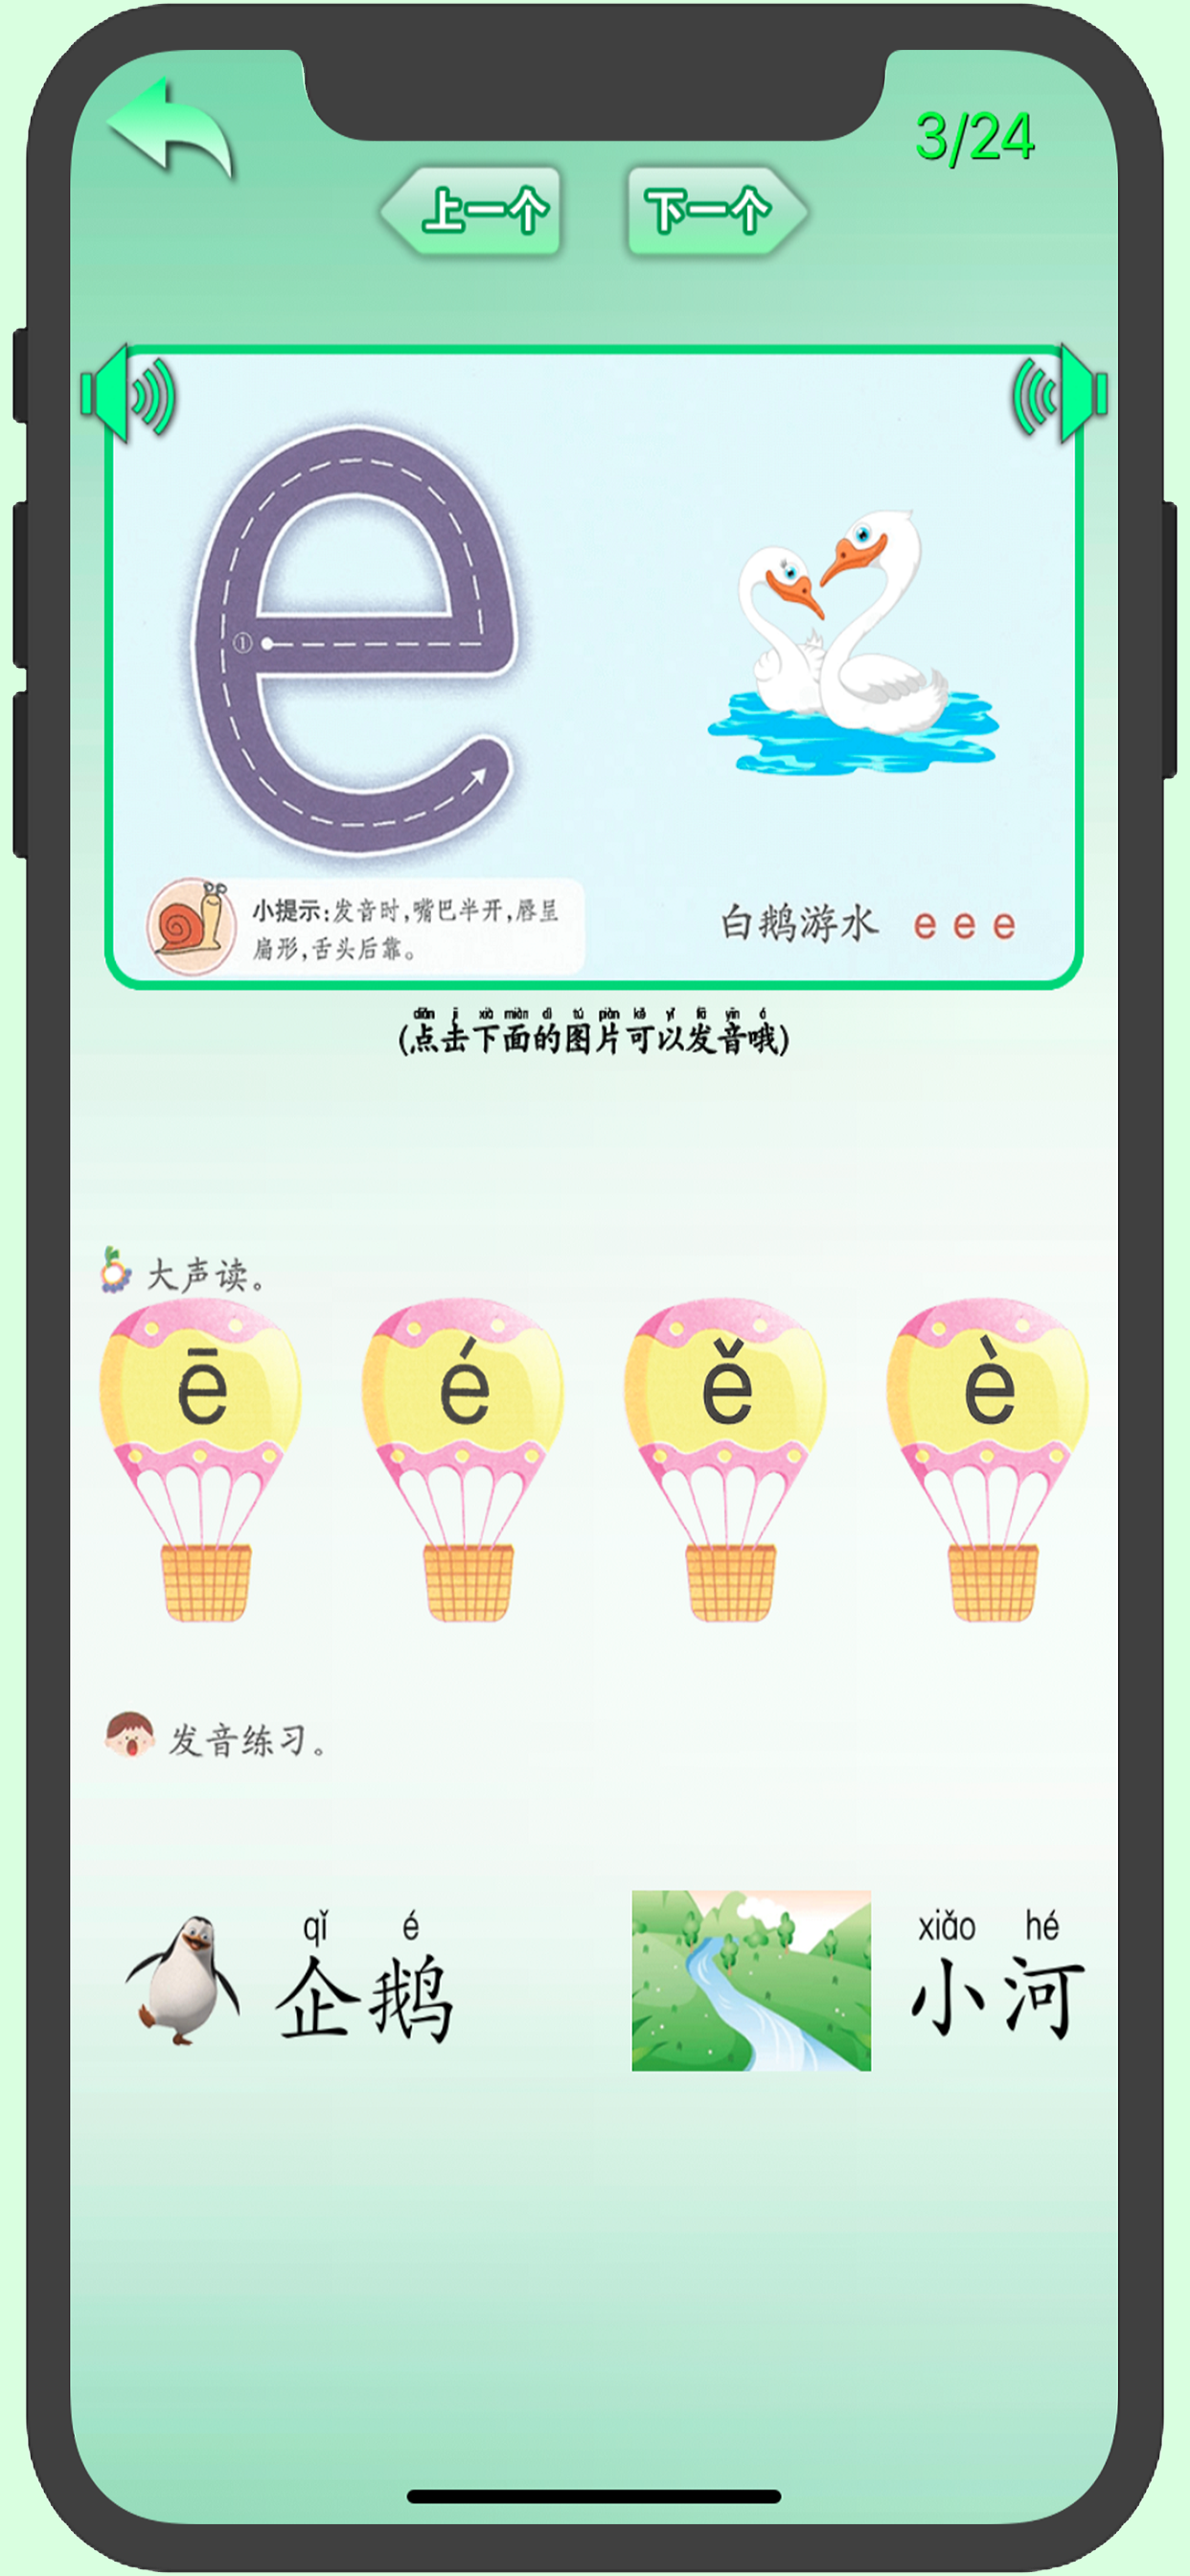 Screenshot 1 of Pinyin chino elemental 1.4.4